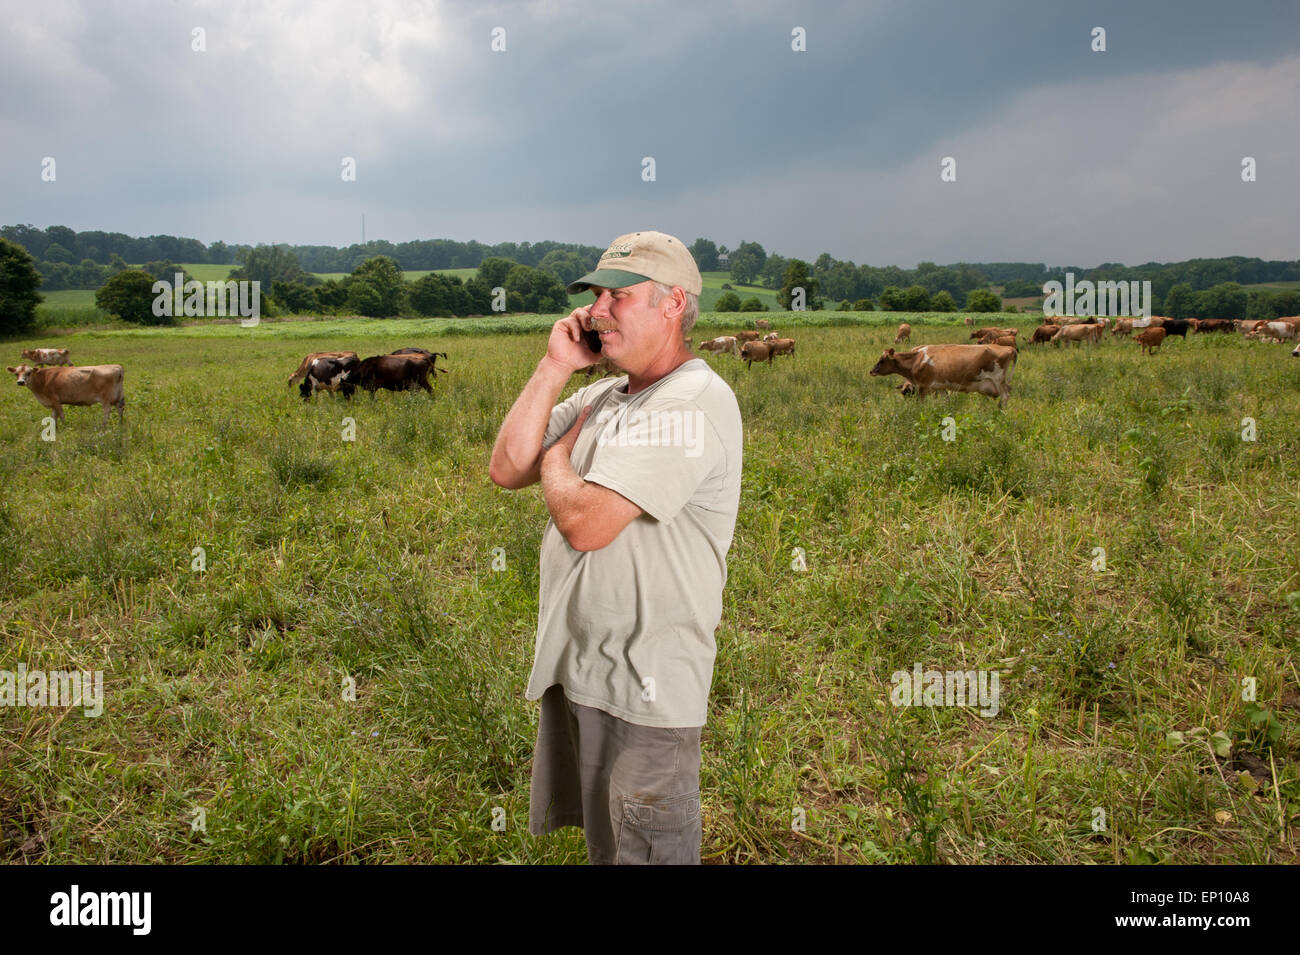 Agricoltore sul telefono cellulare con le vacche in background in verde lungo, Maryland, Stati Uniti d'America Foto Stock